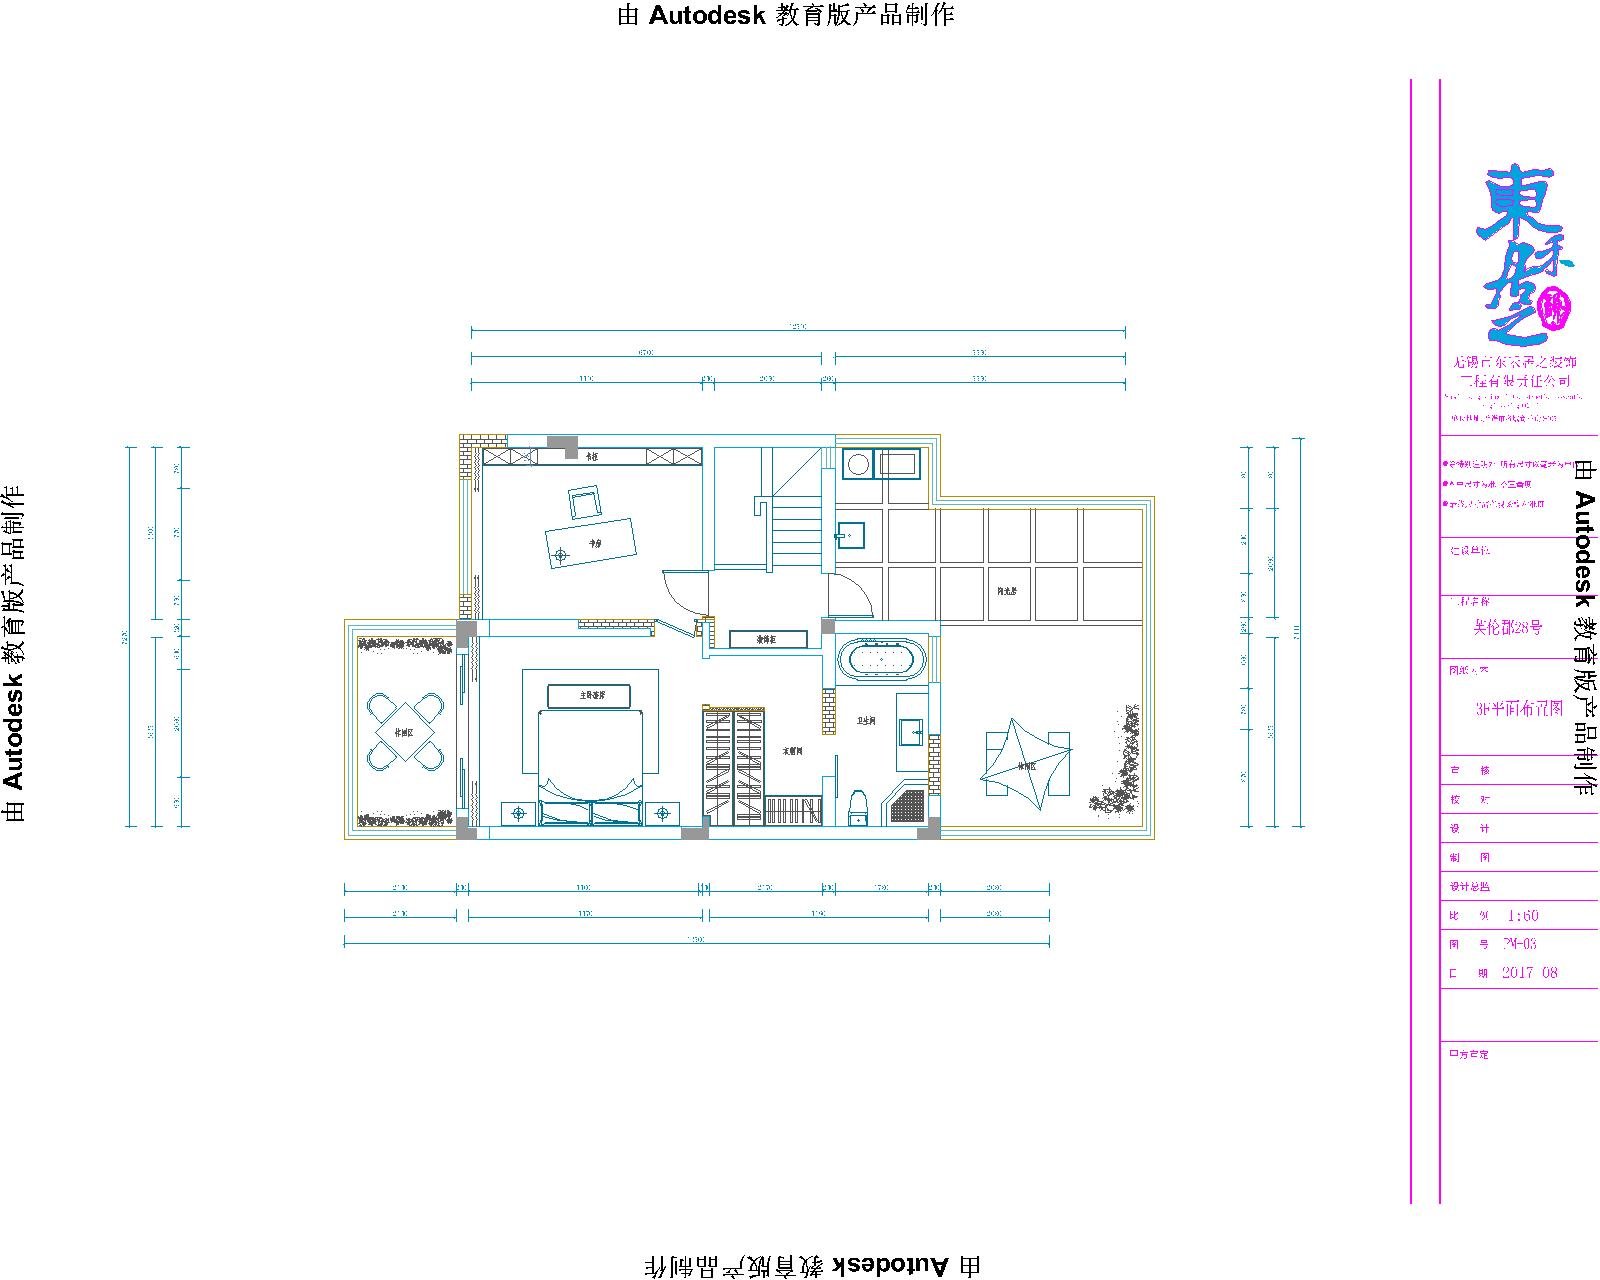 混搭装修风格四卧室330平方米家装案例效果图-家装保姆-罗小红成都家装设计